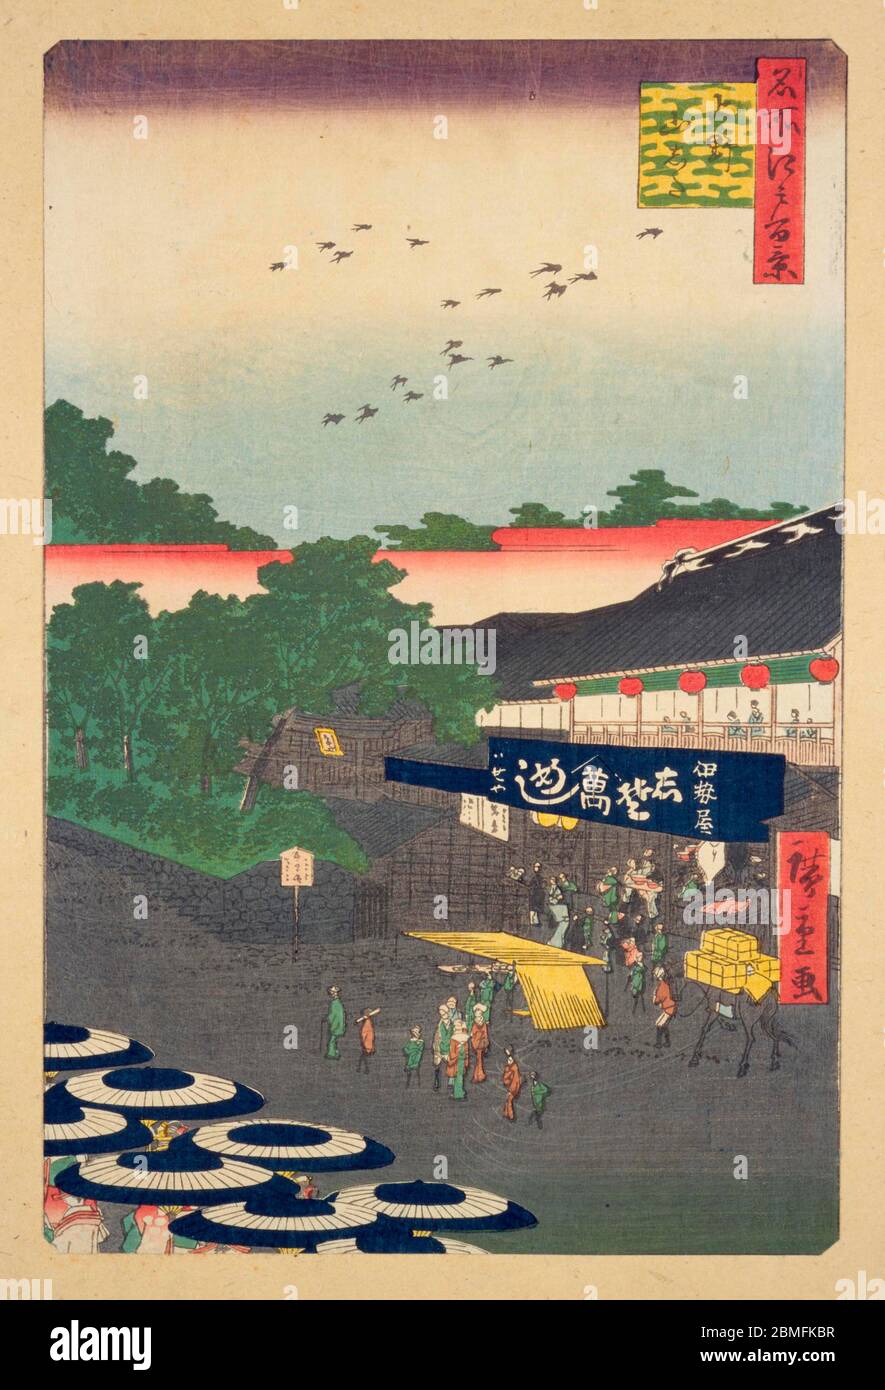 [ 1850er Japan - Japanisches Restaurant ] - Frauen mit Sonnenschirmen vor dem Restaurant und den Tempeln von Iseya in Ueno, Edo (derzeit Tokio), 1858 (Ansei 5). Dieser Holzschnitt ist Bild 12 in hundert berühmten Ansichten von Edo (名所江戸百景, Meisho Edo Hyakkei), einer Serie von Ukiyoe Künstler Utagawa Hiroshige (歌川広重, 1797–1858) erstellt. Es ist eine von 42 Frühlingsszenen der Serie. Titel: Ueno Yamashita (上野山した) Vintage Ukiyoe Holzschnitt aus dem 19. Jahrhundert. Stockfoto